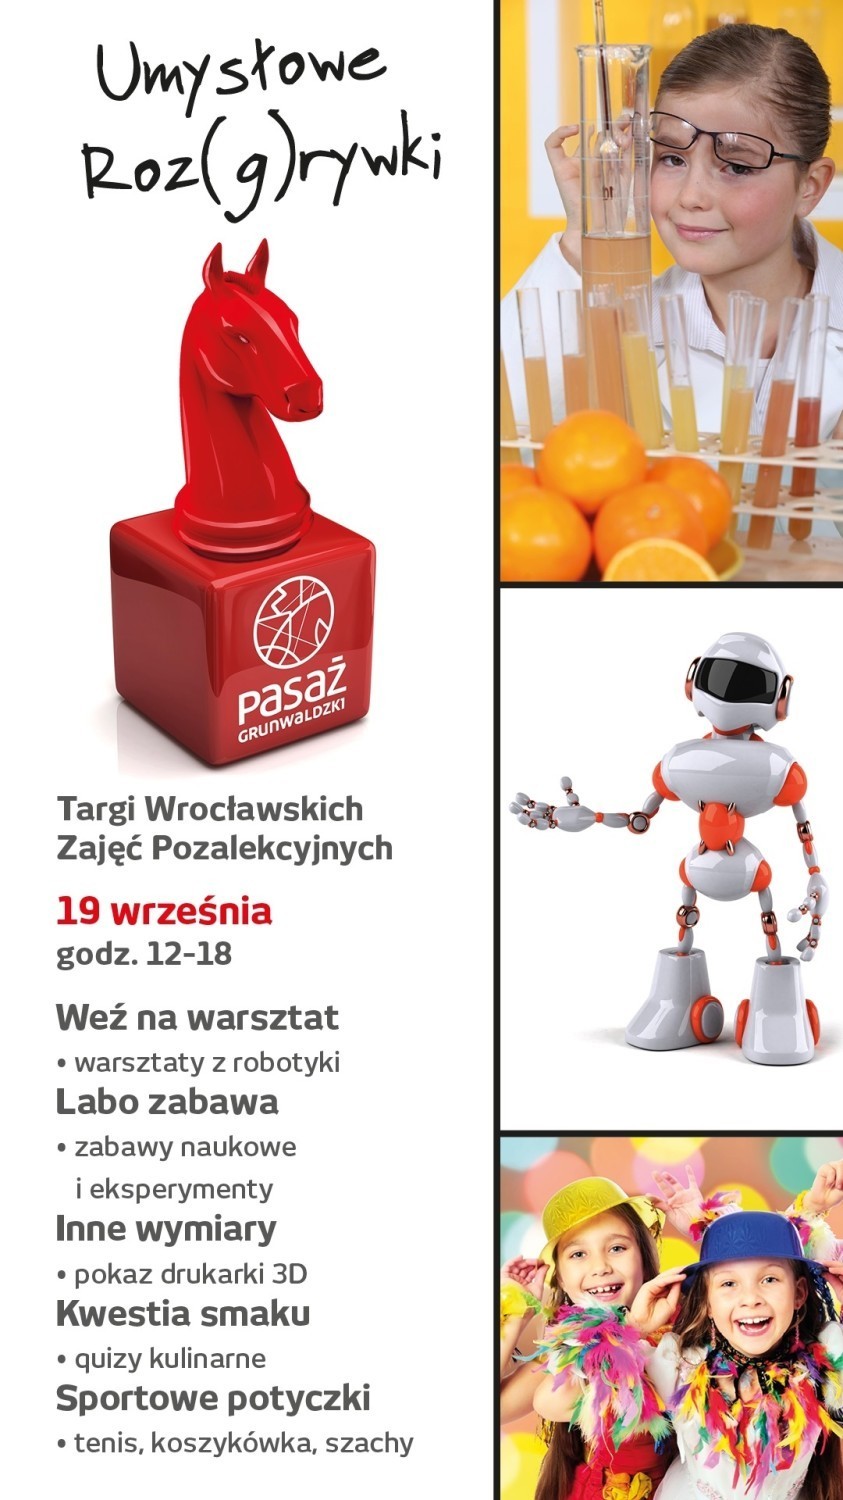 Targi Zajęć Pozalekcyjnych w weekend we Wrocławiu